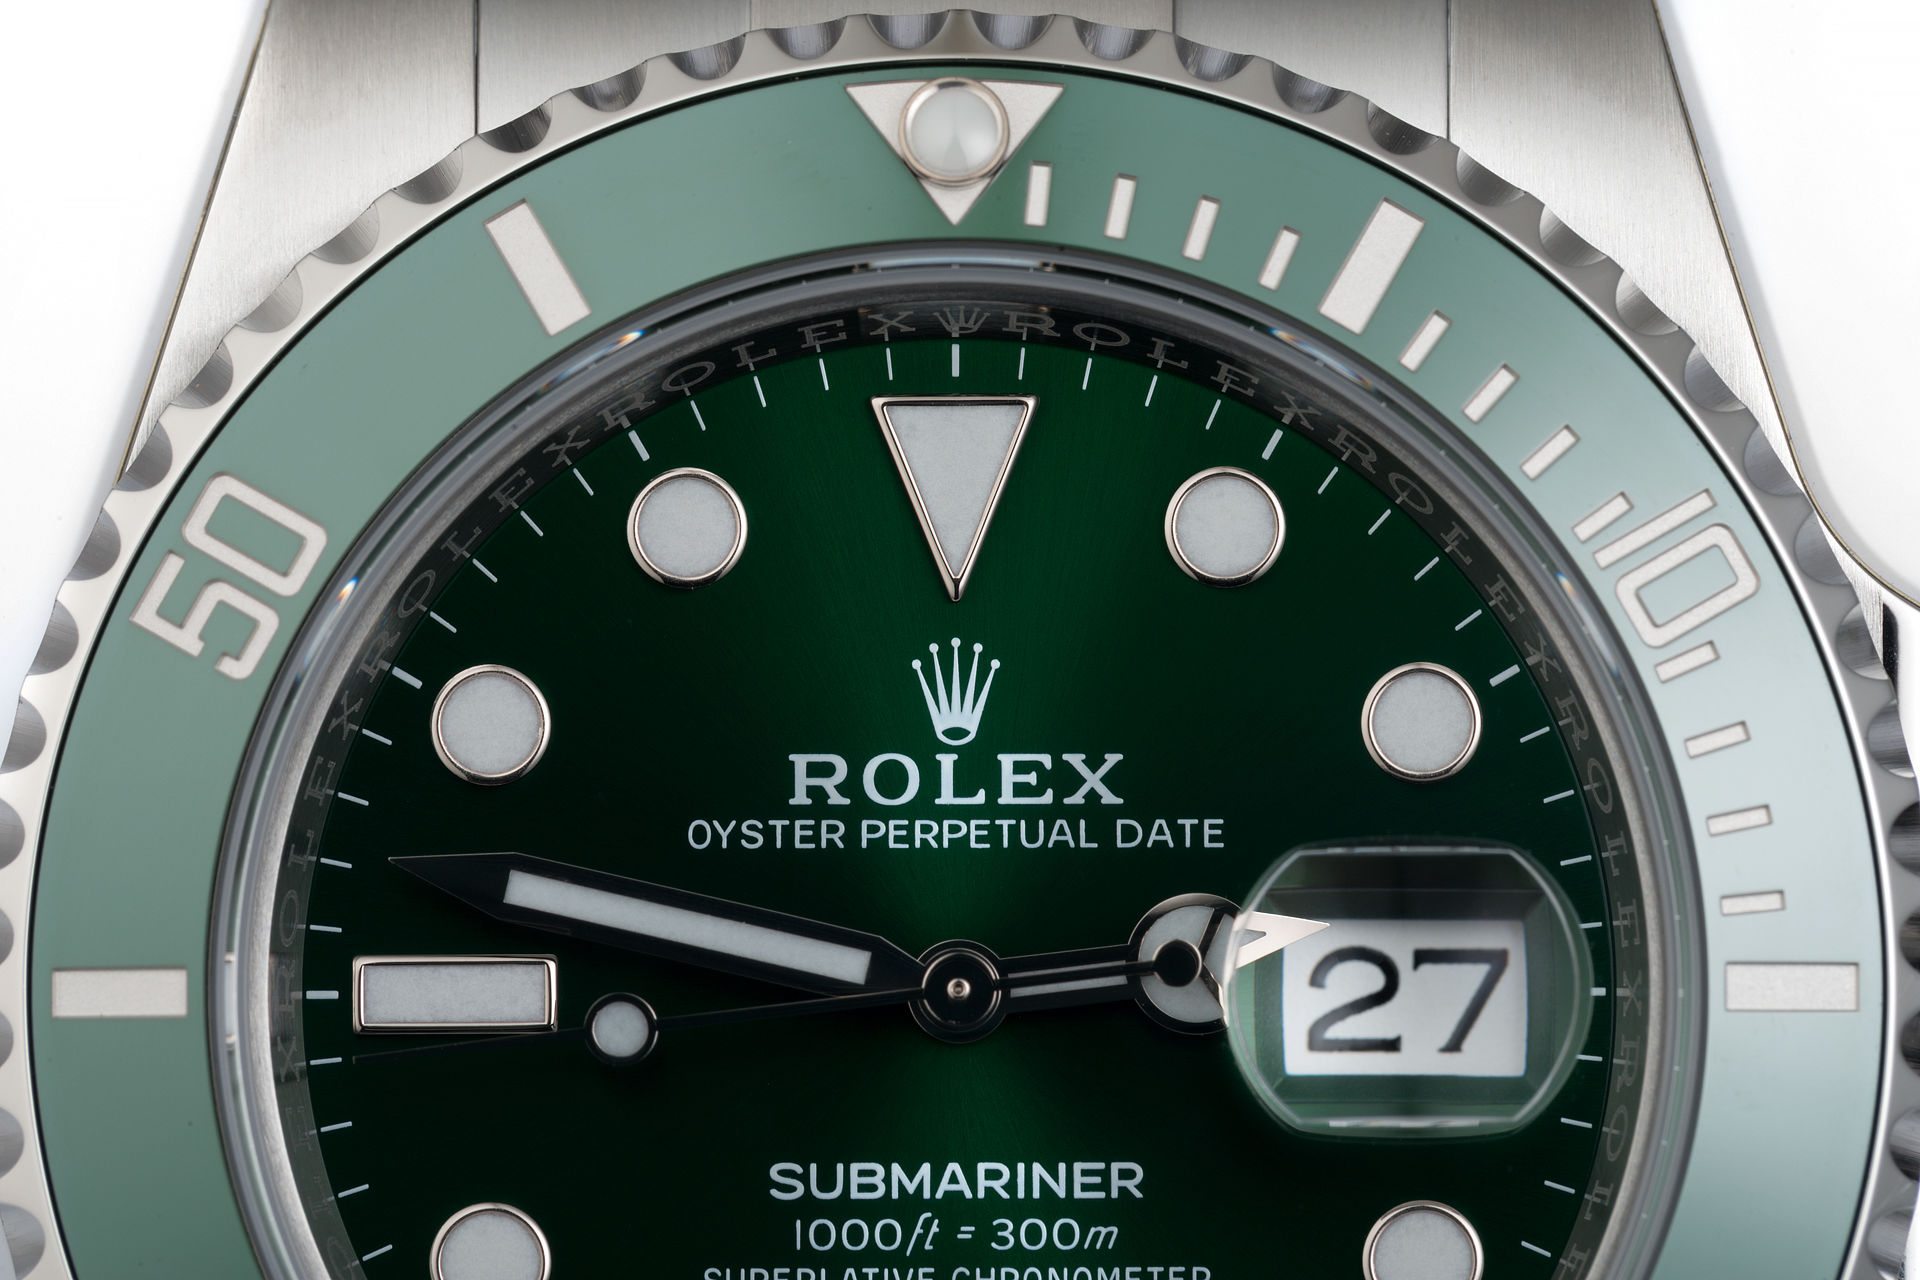 ref 116610LV | Brand New 5 Year Warranty | Rolex Submariner Date